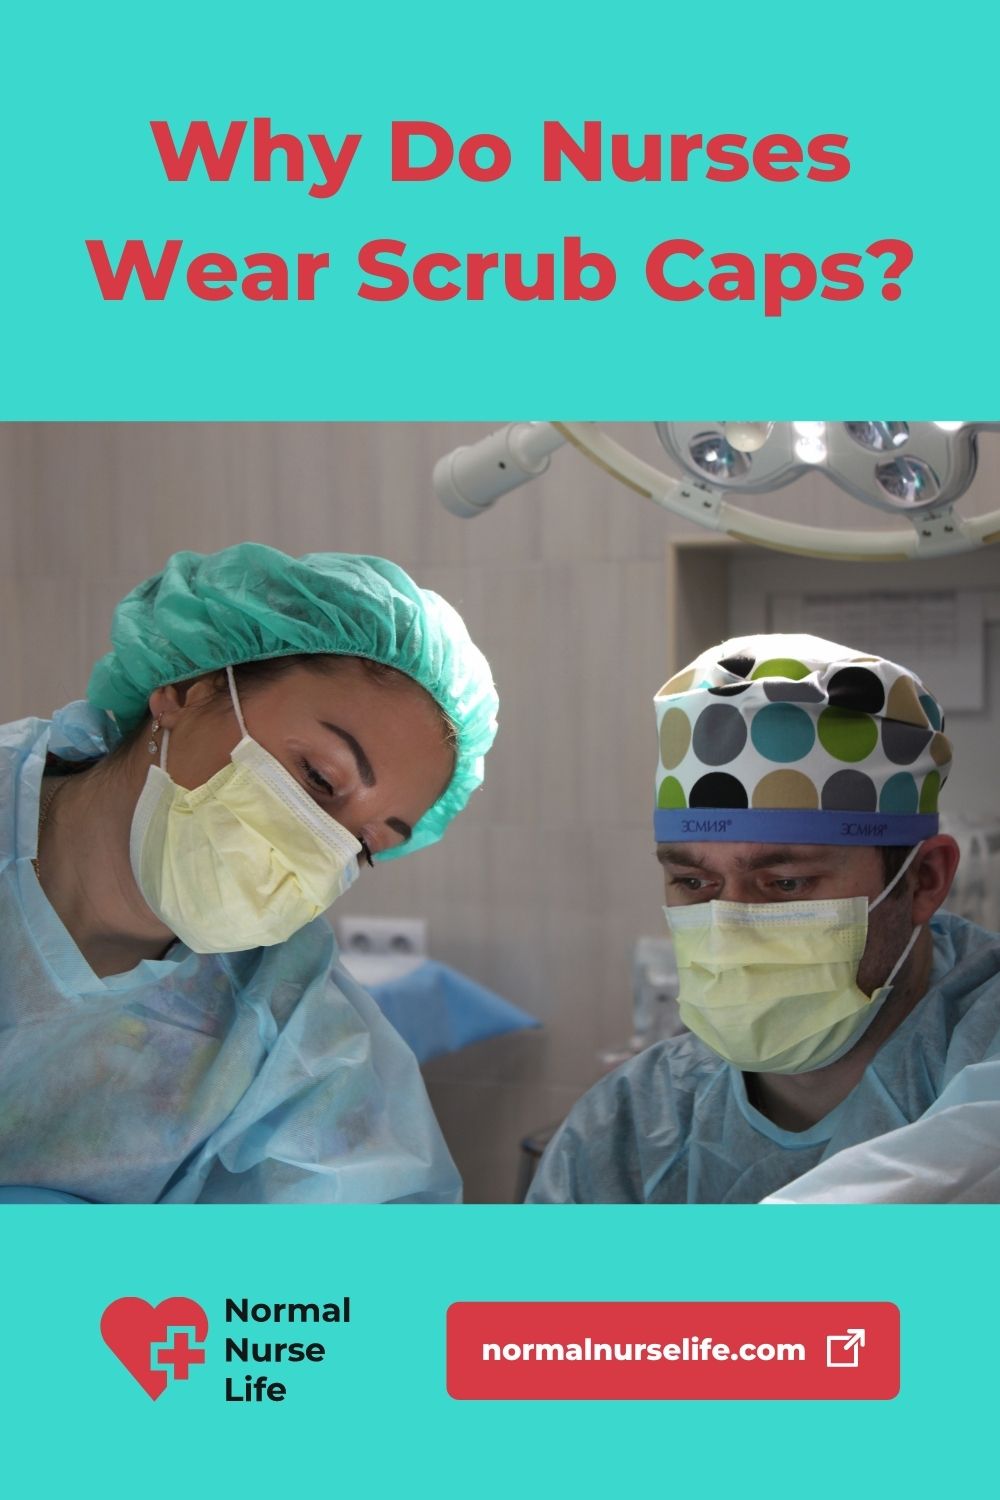 Why do nurses wear scrub caps?